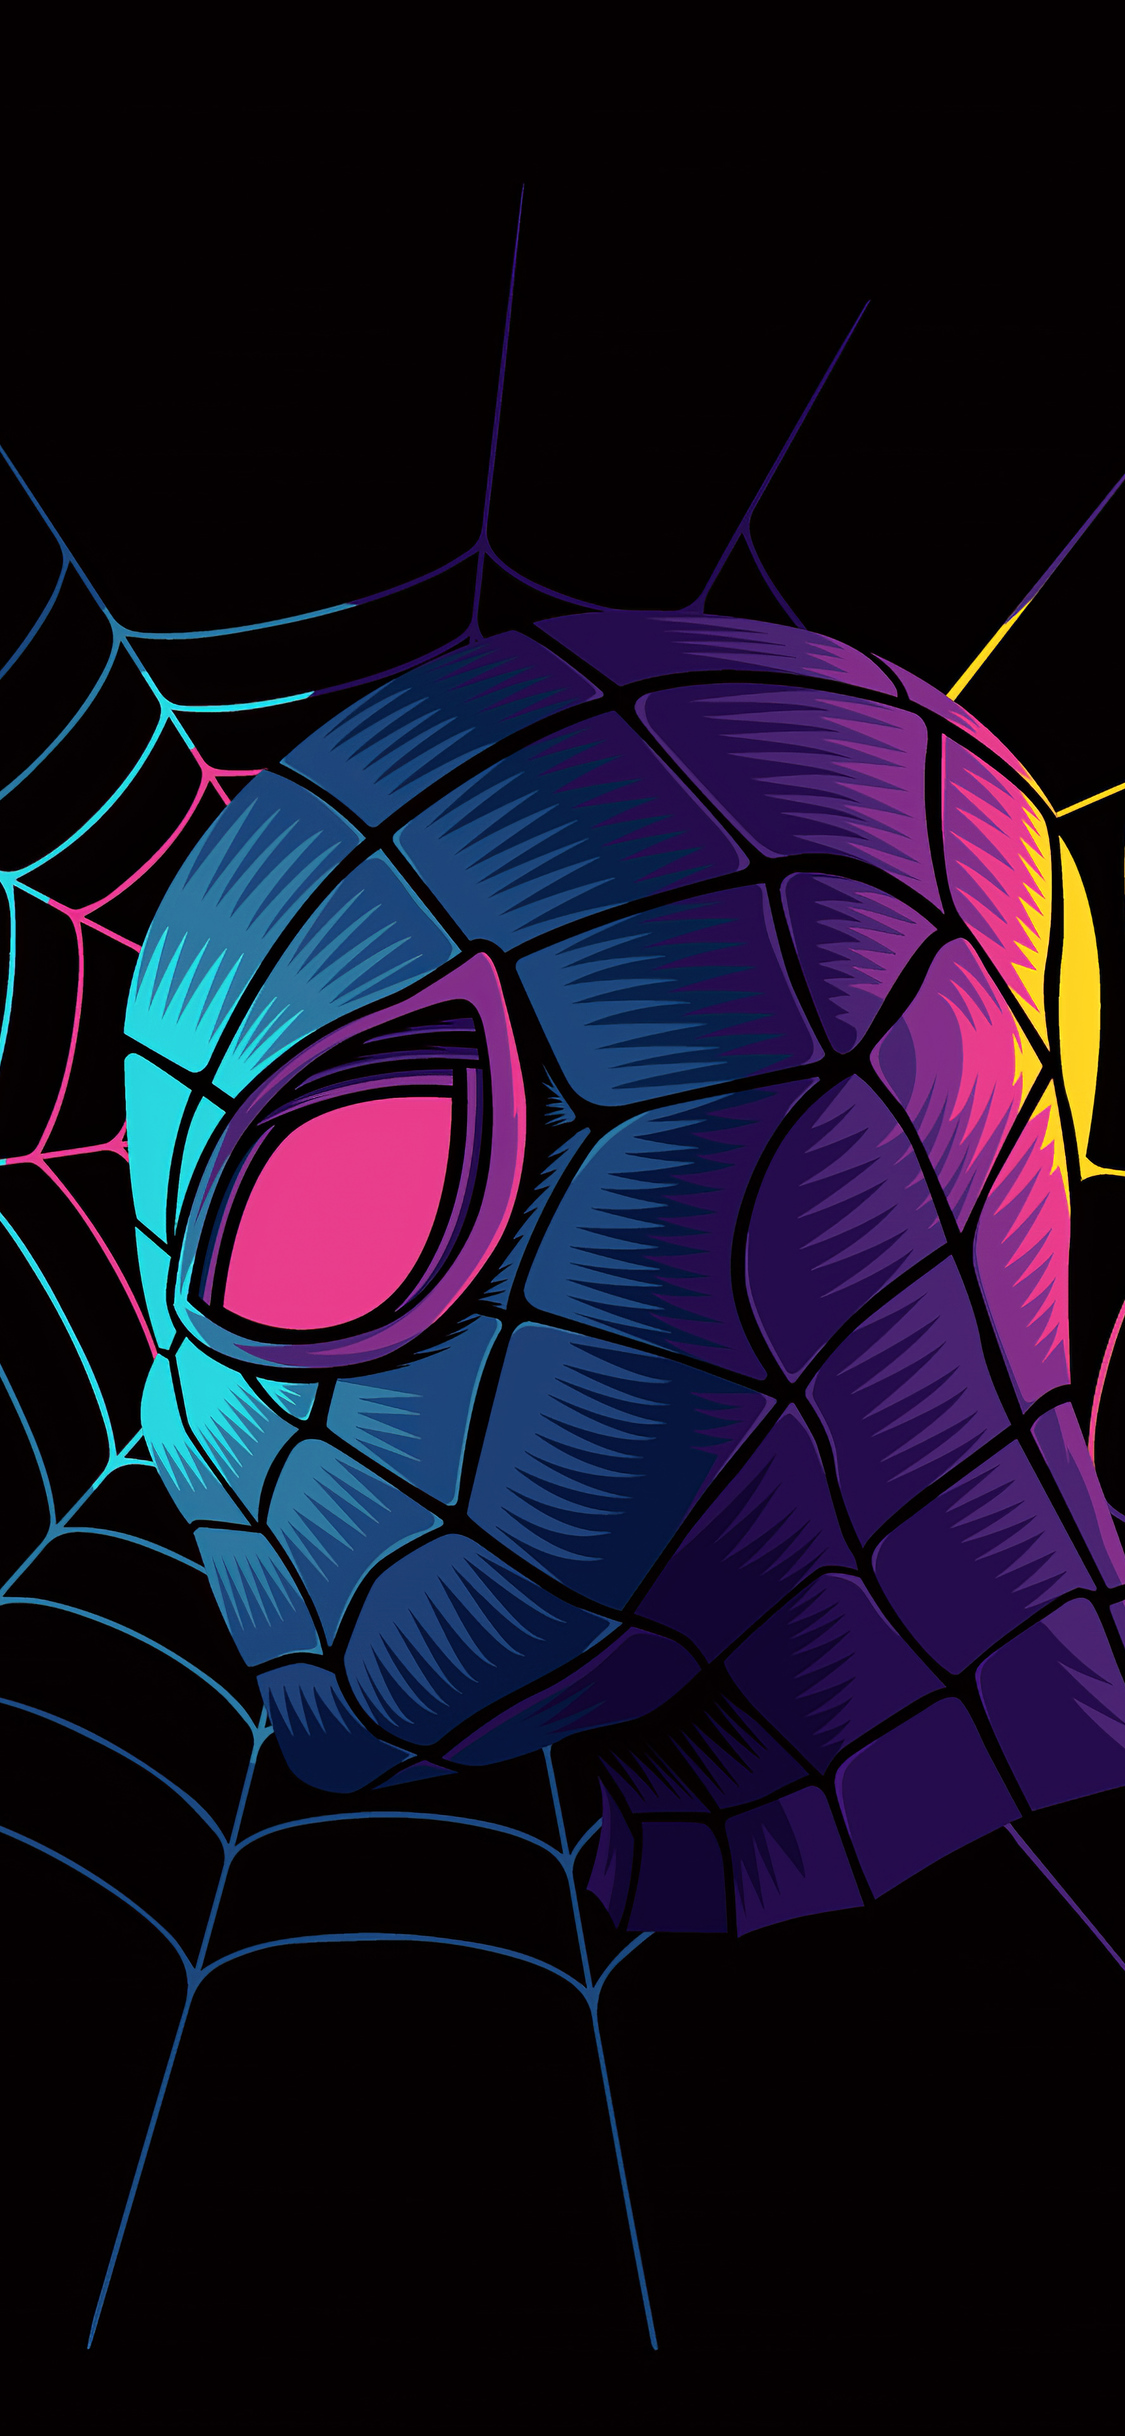 spiderman fondo de pantalla,hombre araña,personaje de ficción,superhéroe,ficción,oscuridad